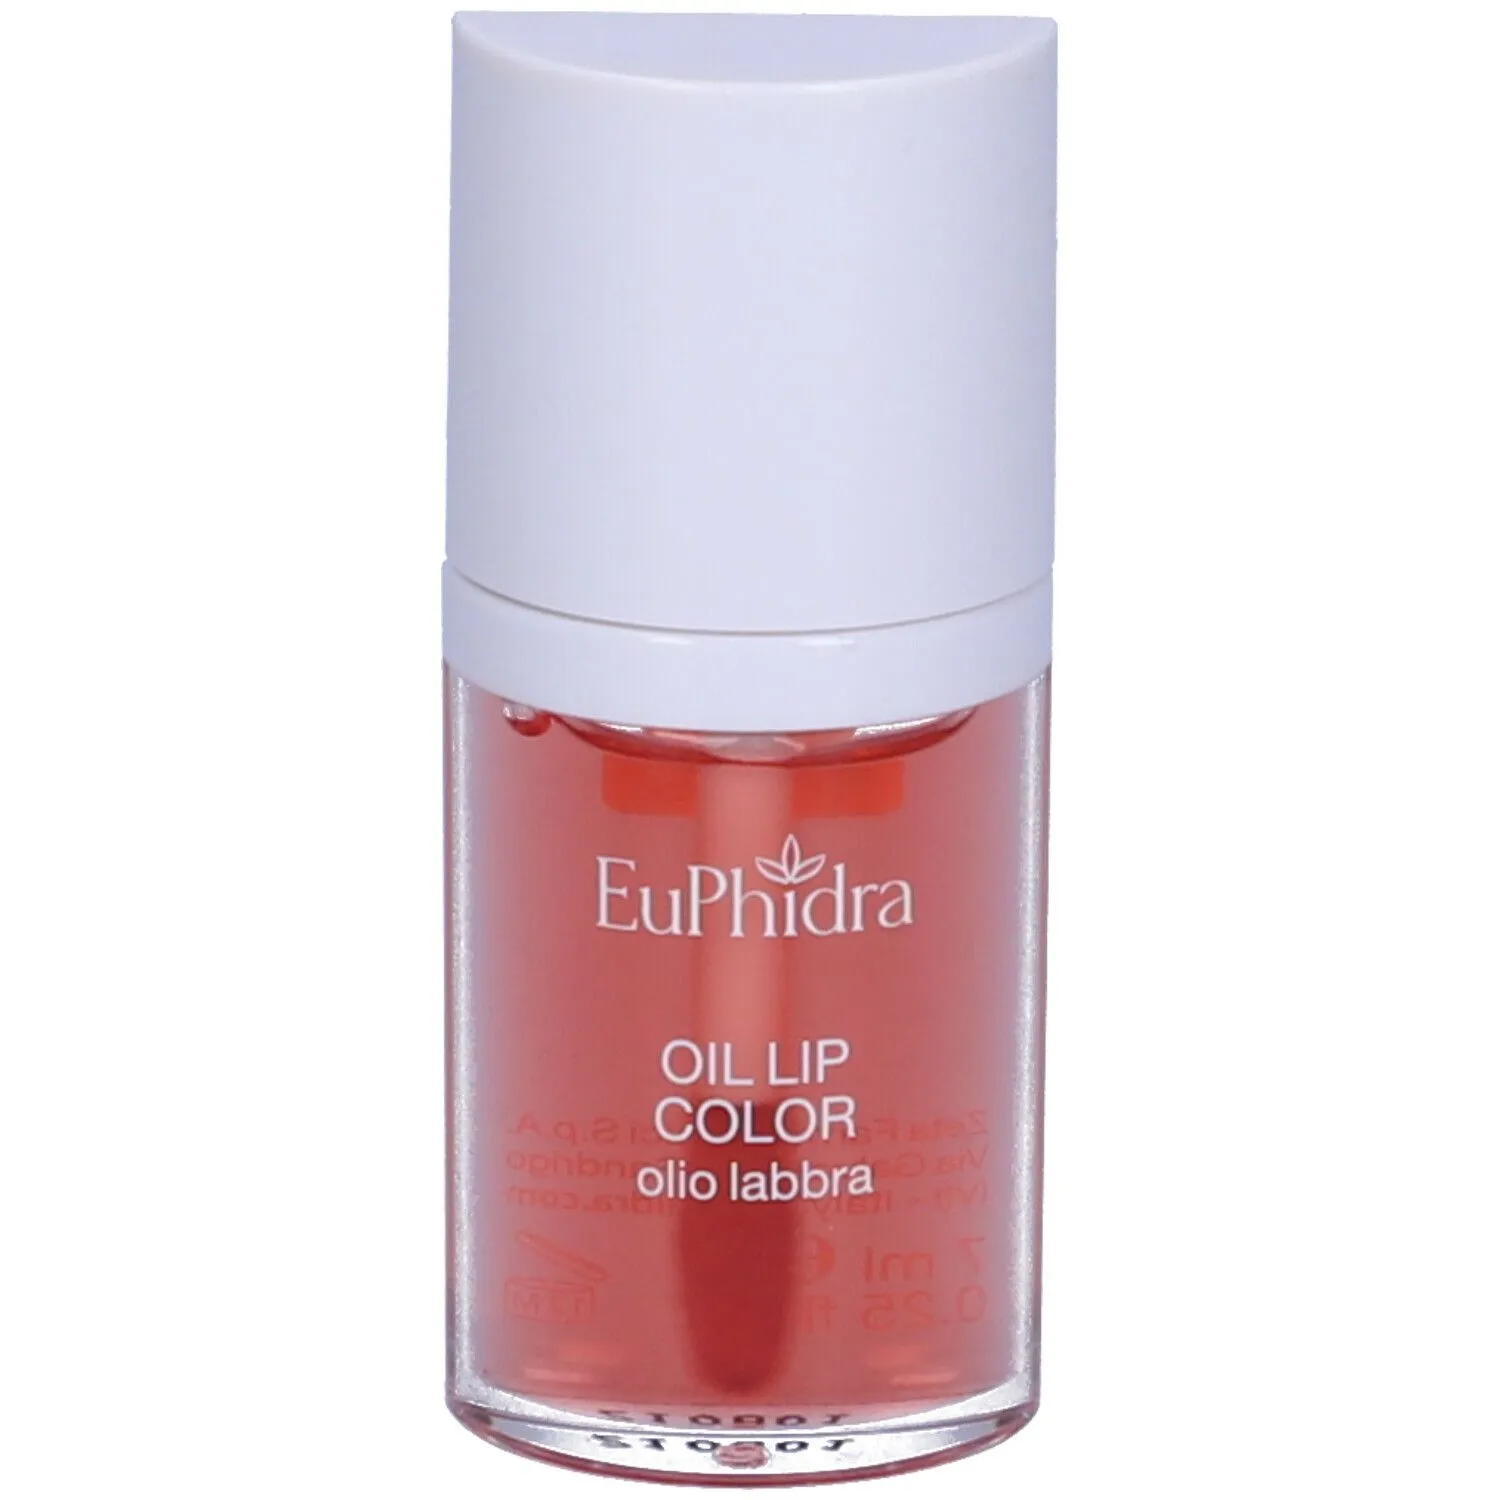 EuPhidra Oil Lip Color Labbra 01 